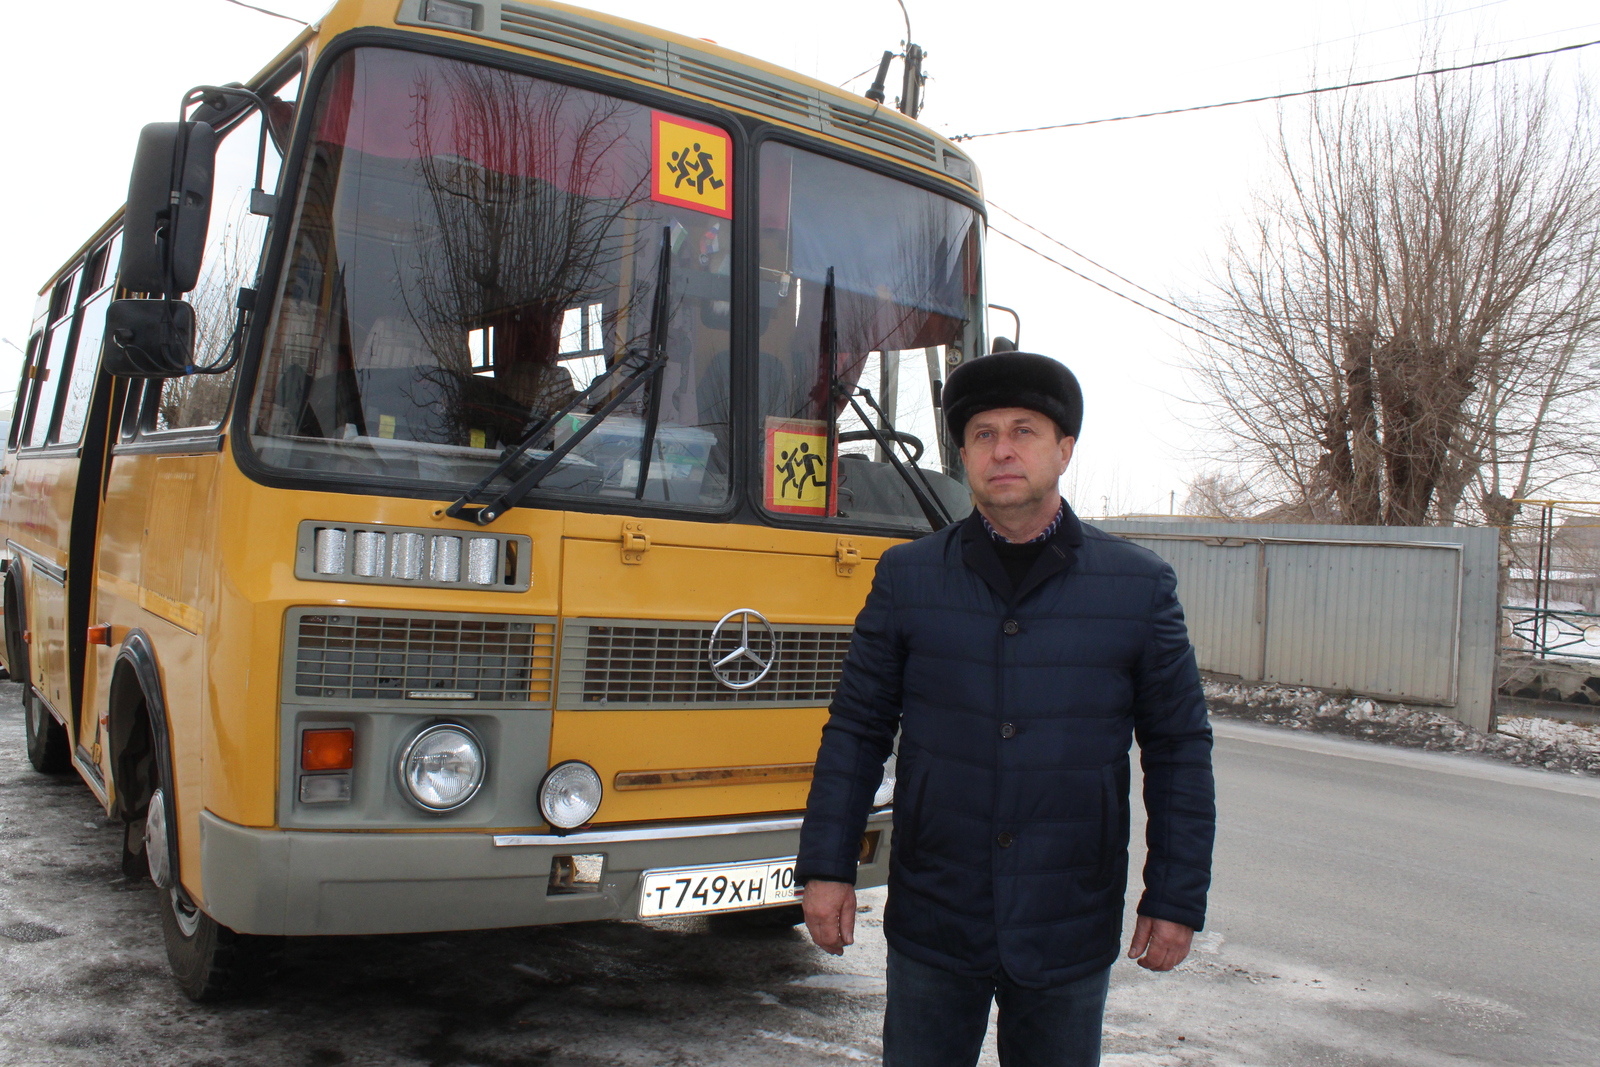 Водитель школьного автобуса Александр ЯШНИКОВ в юности был известным в городе мотогонщиком